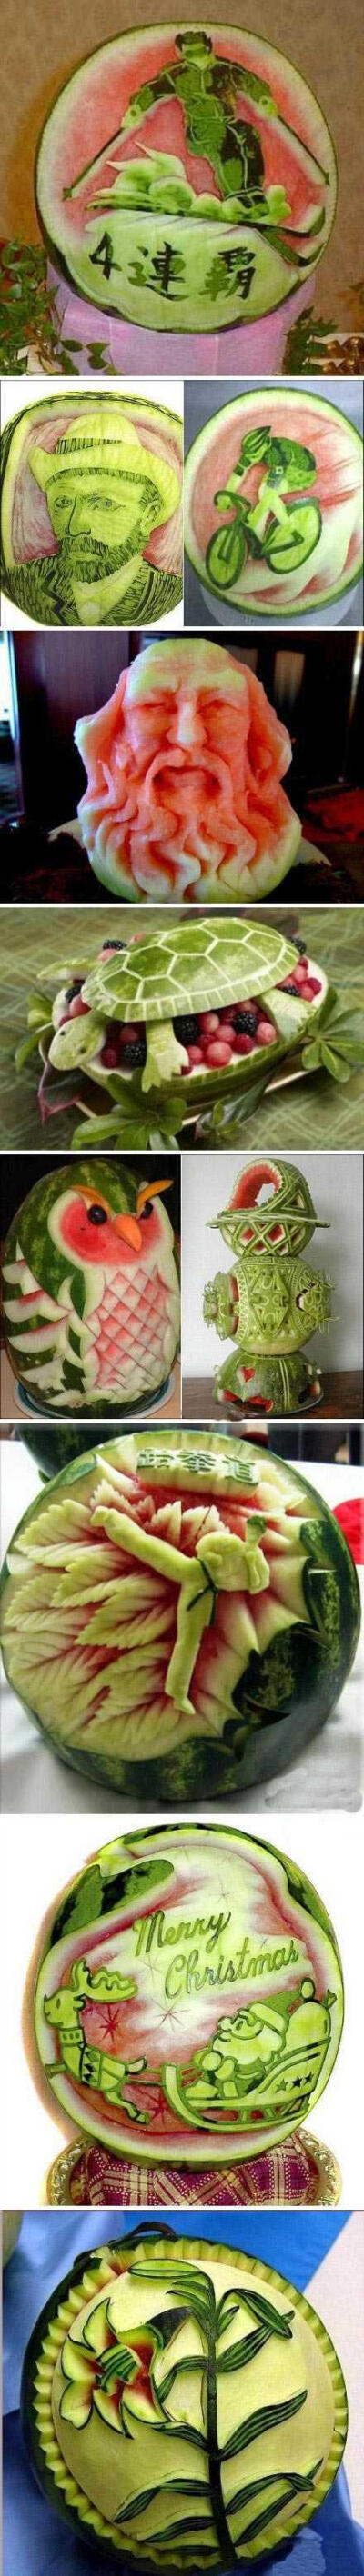 这些西瓜雕刻太艺术了